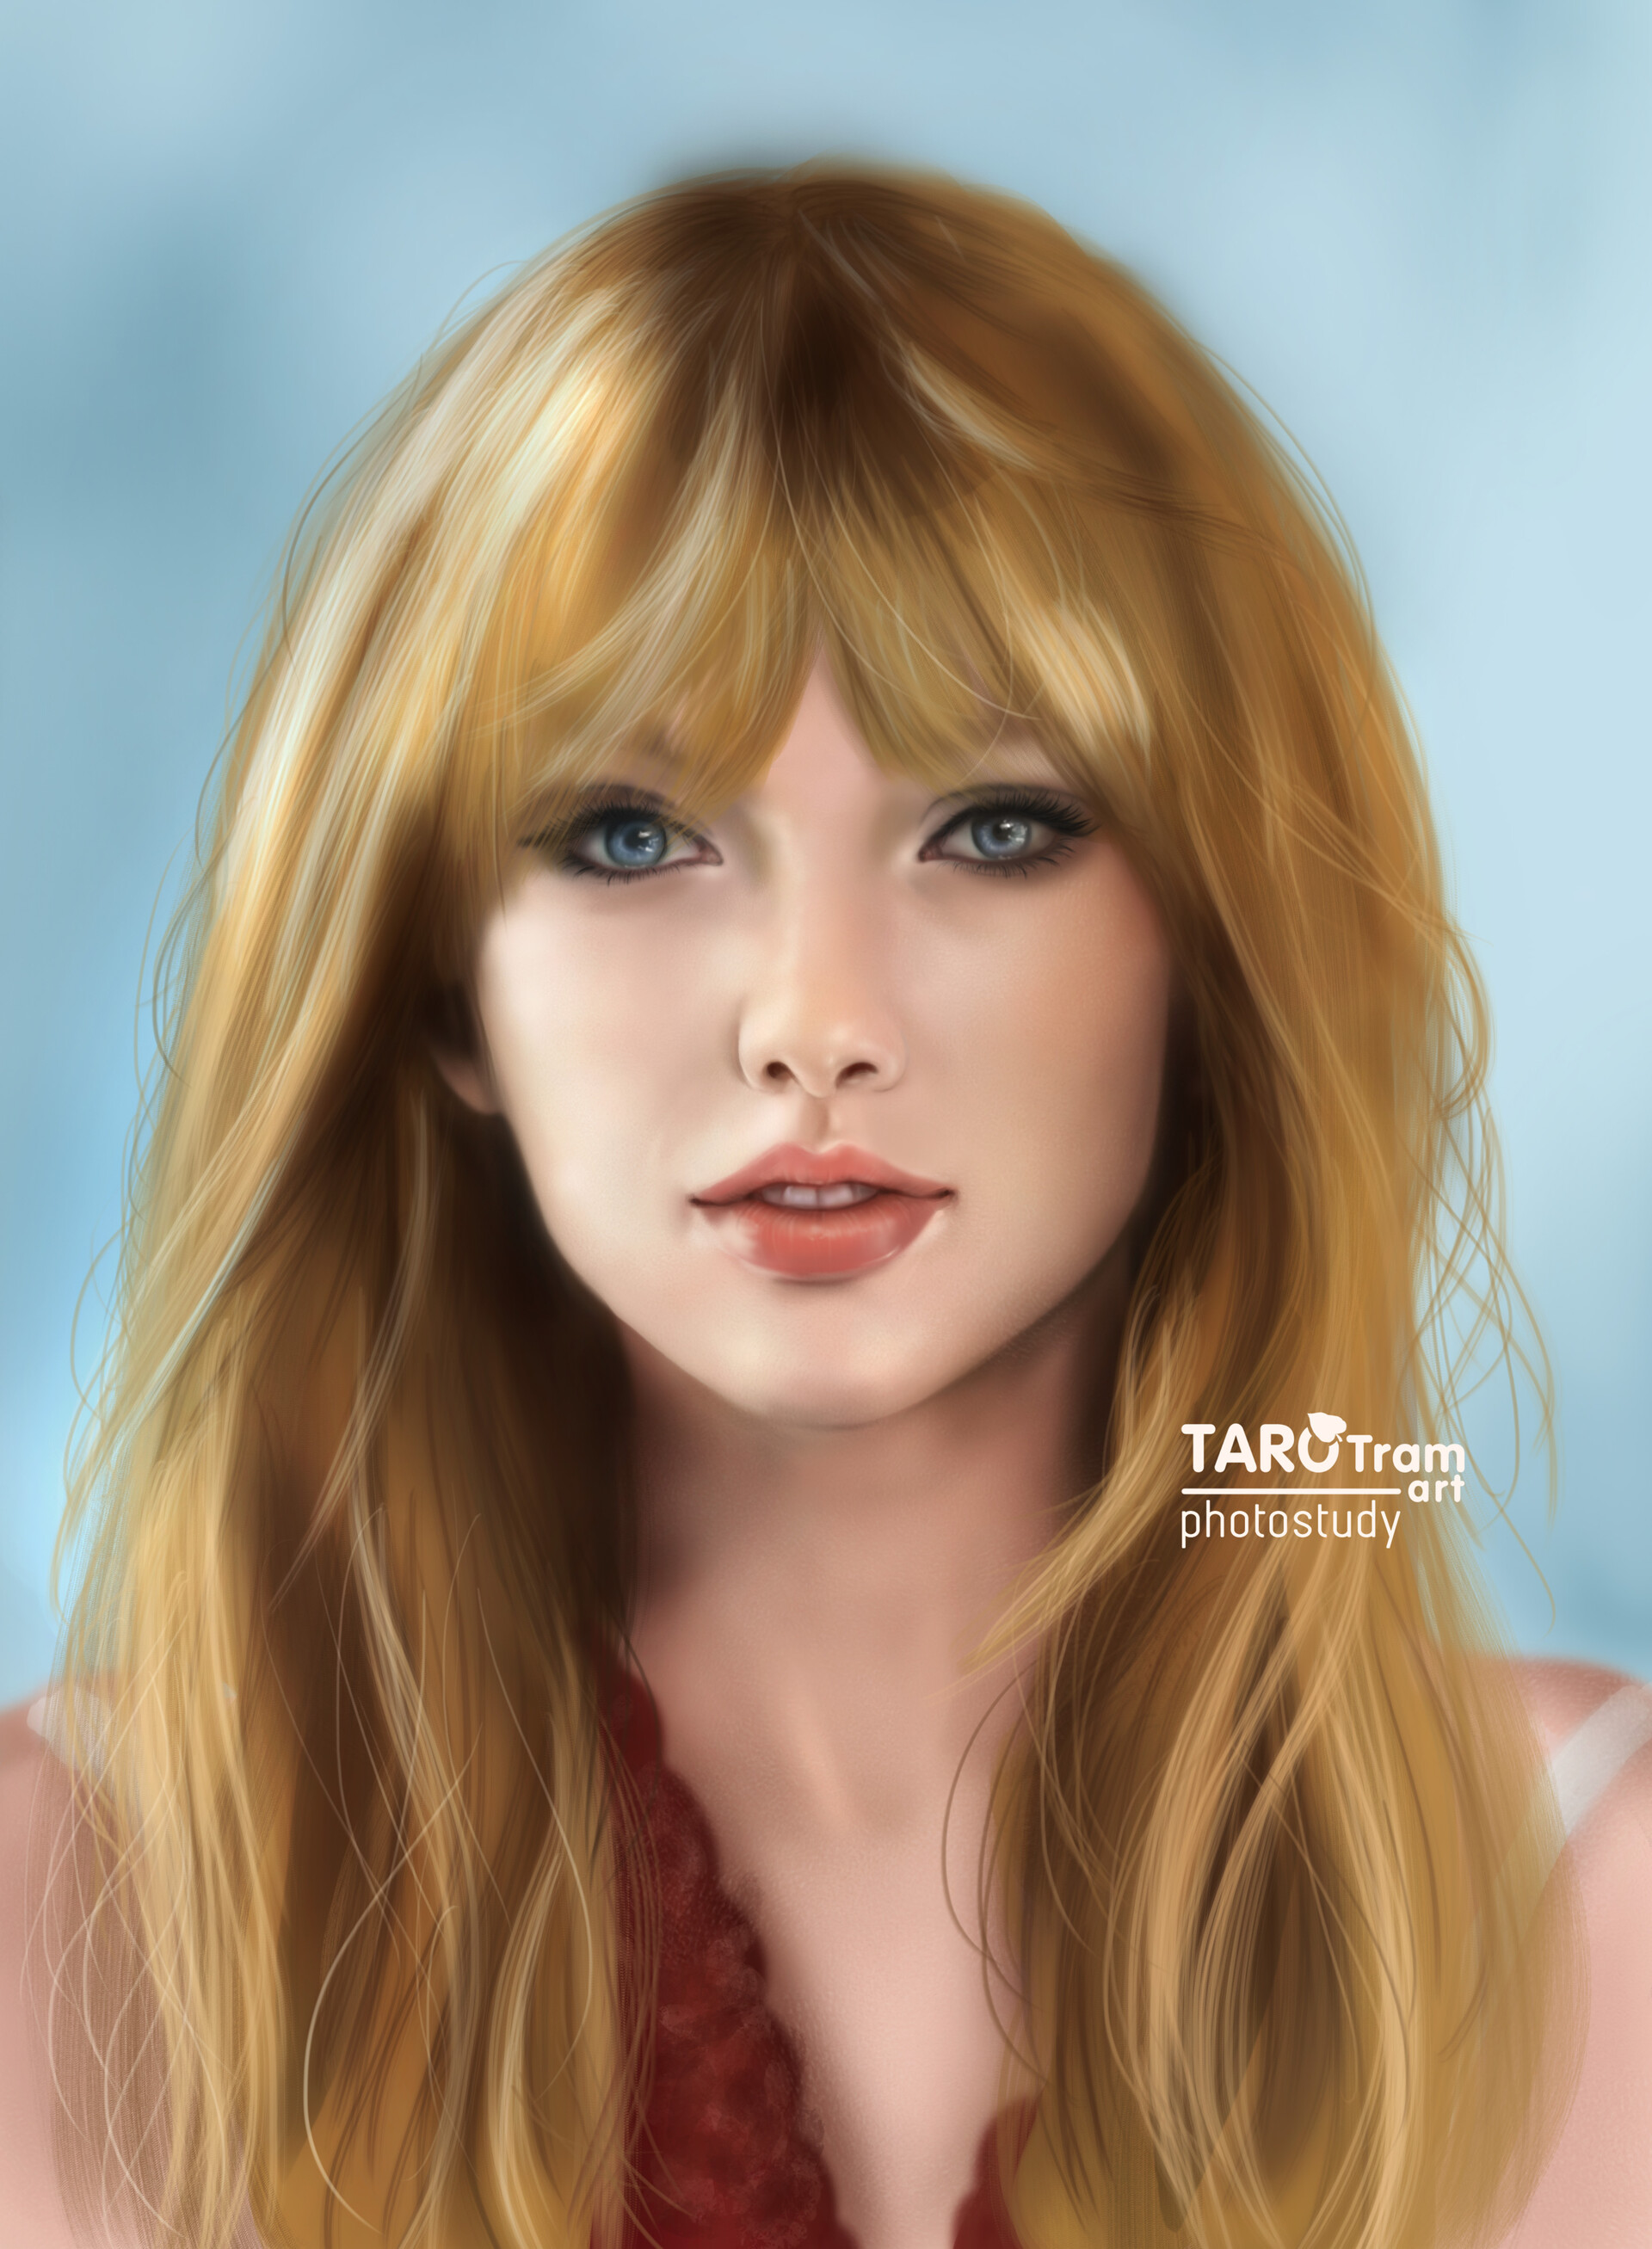 General 1920x2614 Taylor Swift women singer celebrity artwork brunette fan art portrait display digital art blue eyes simple background